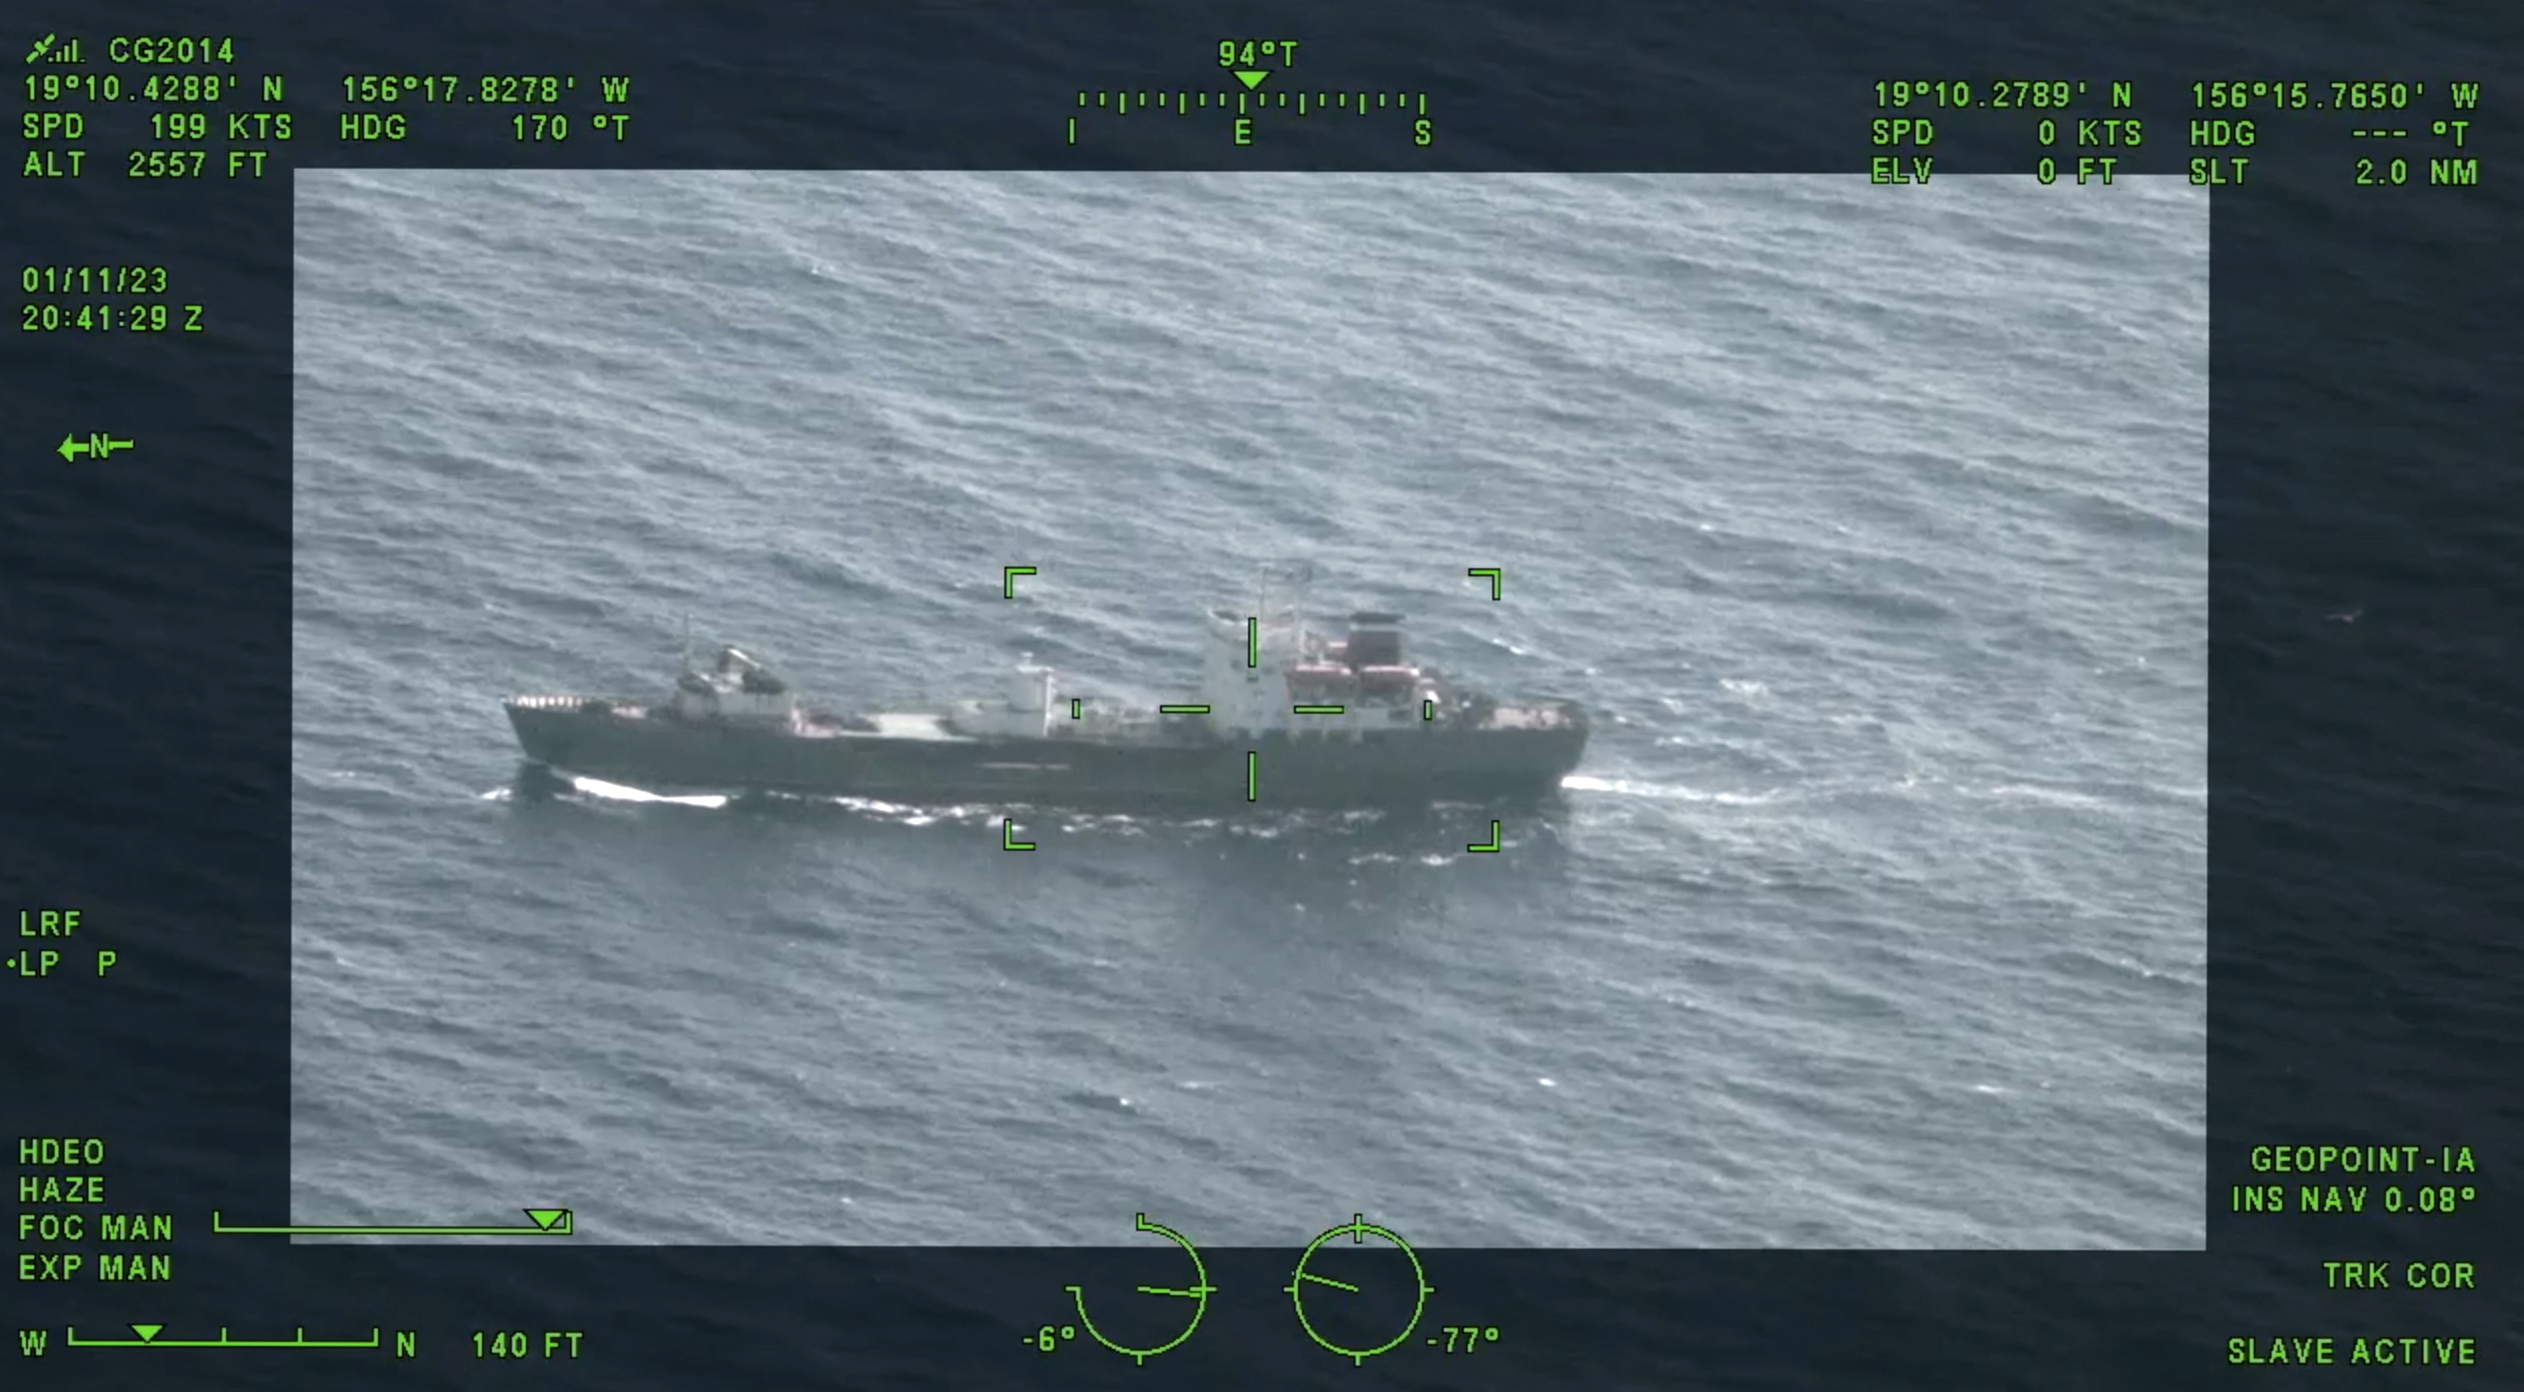 Si bien la aparición de un barco de vigilancia ruso a lo largo de la costa de EE. UU. no es inusual, este ha atraído más atención debido a las crecientes tensiones entre EE. UU. y Rusia.